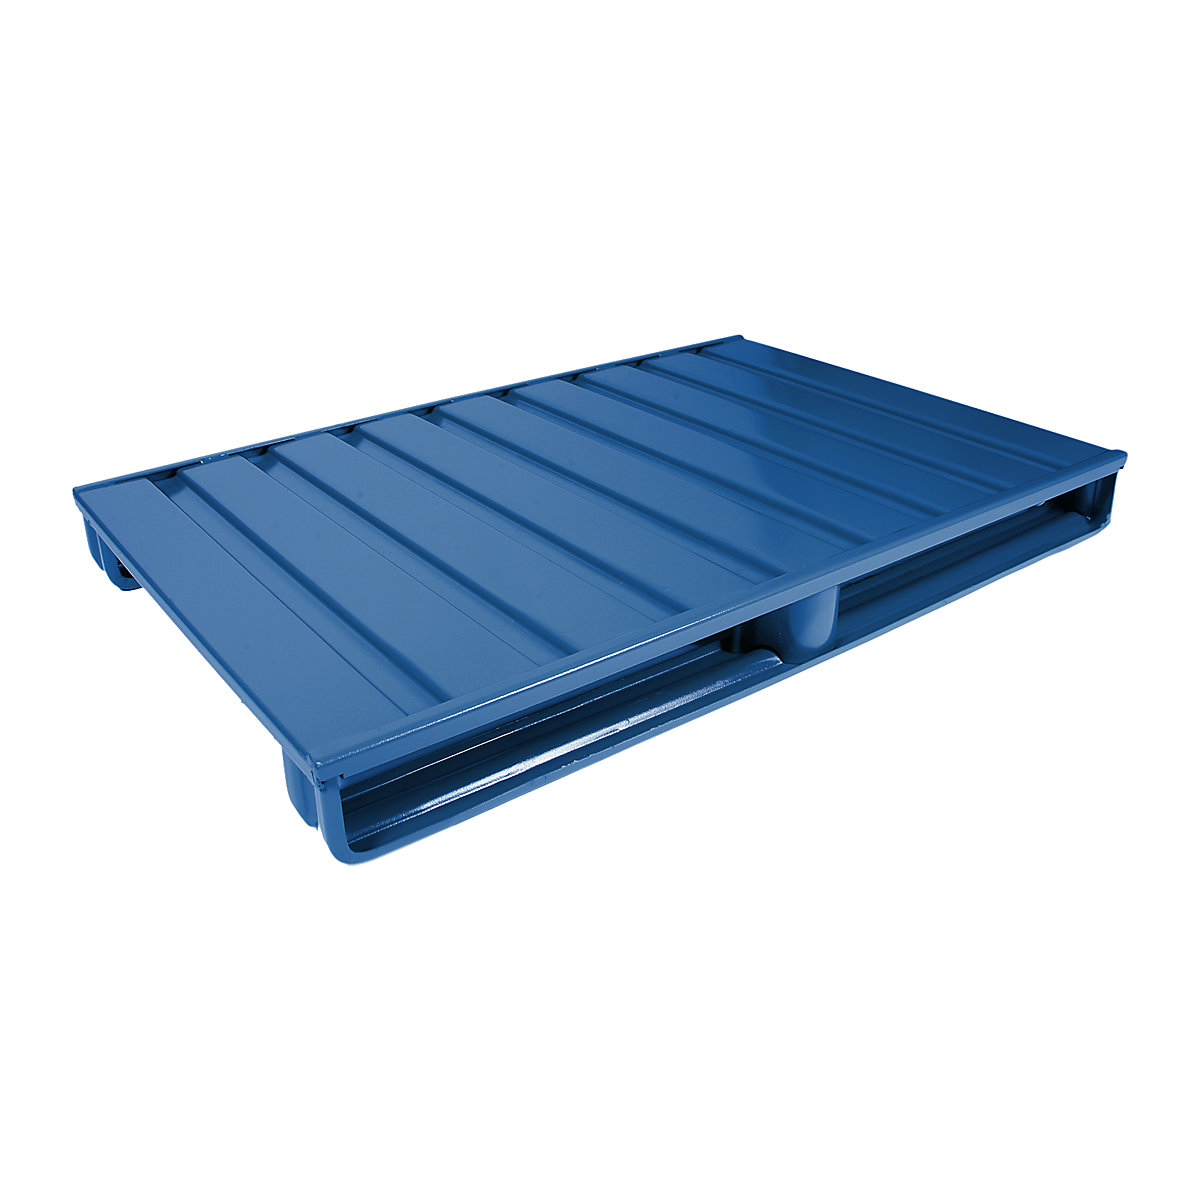 Ploska jeklena paleta – Heson, DxŠ 1000 x 800 mm, nosilnost 2000 kg, encijan modre barve-1